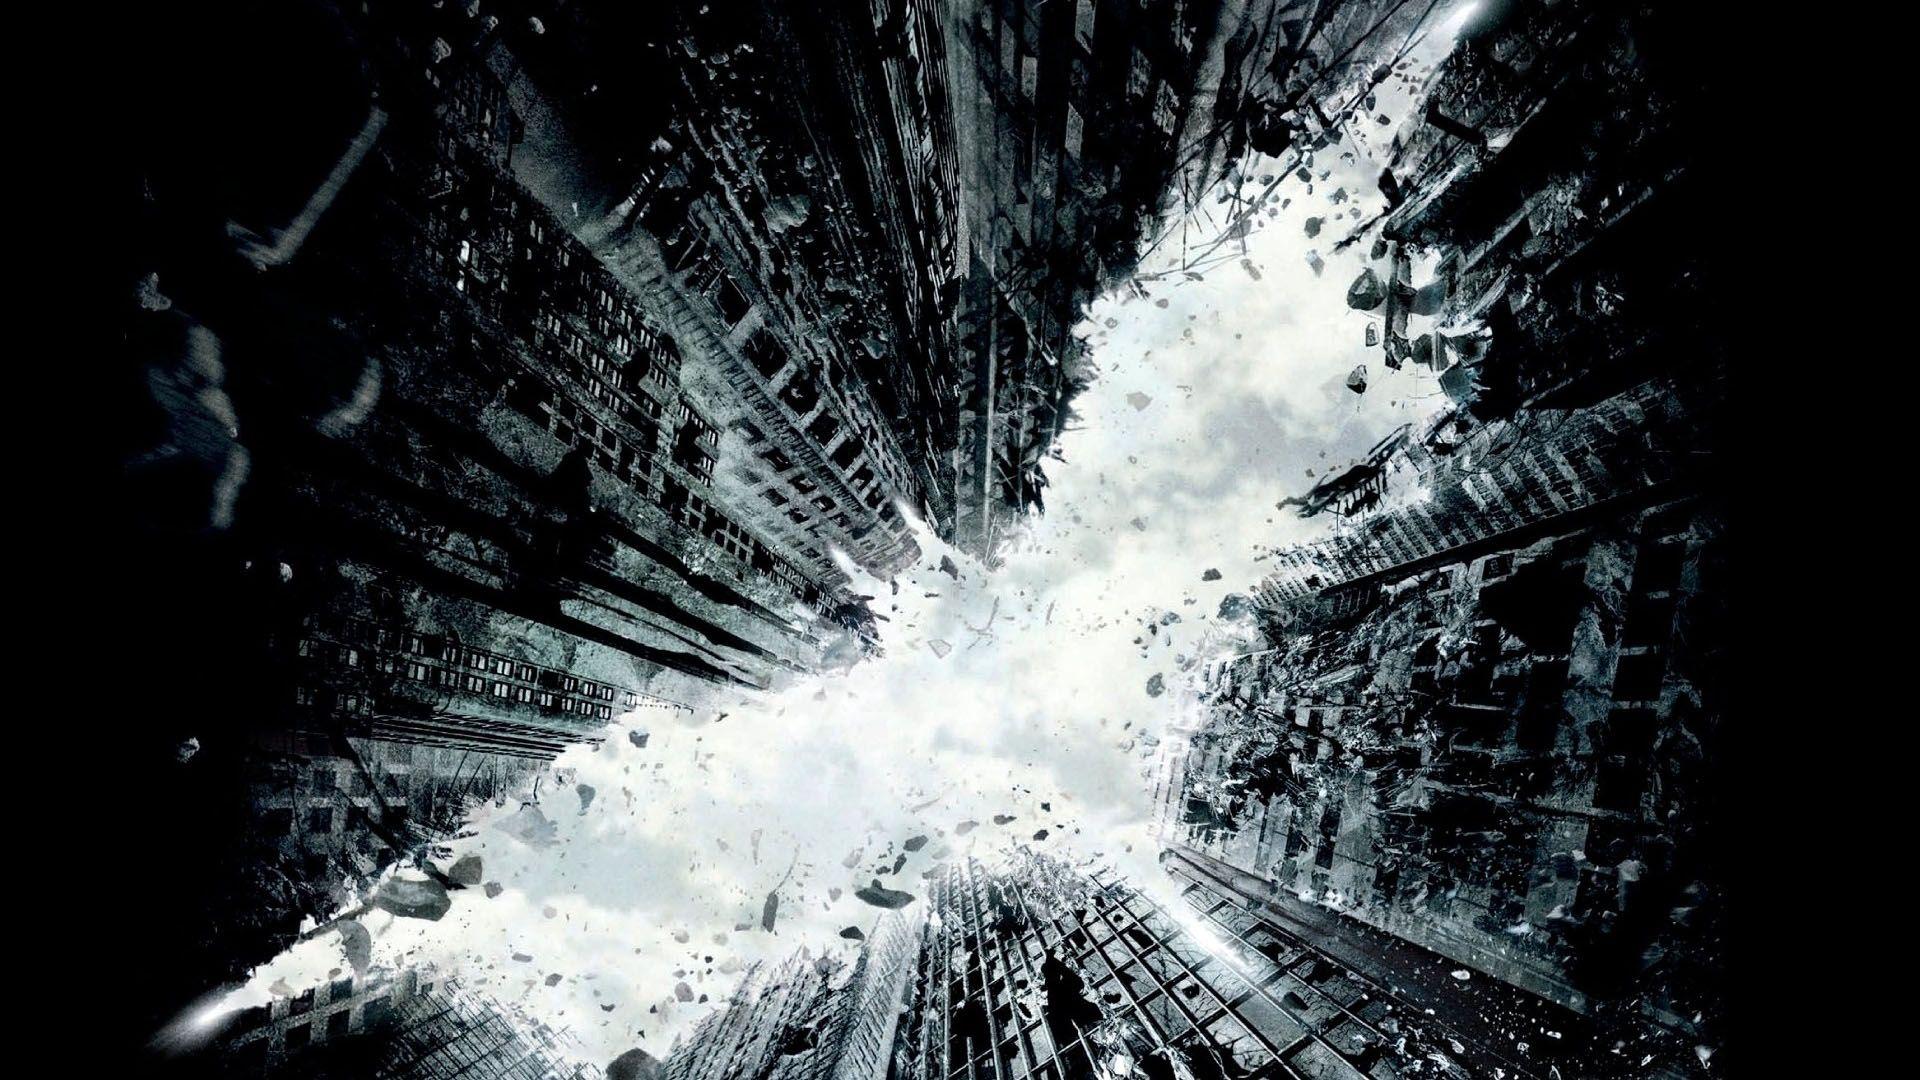 Gotham Buildings Dark Knight HD 16 9